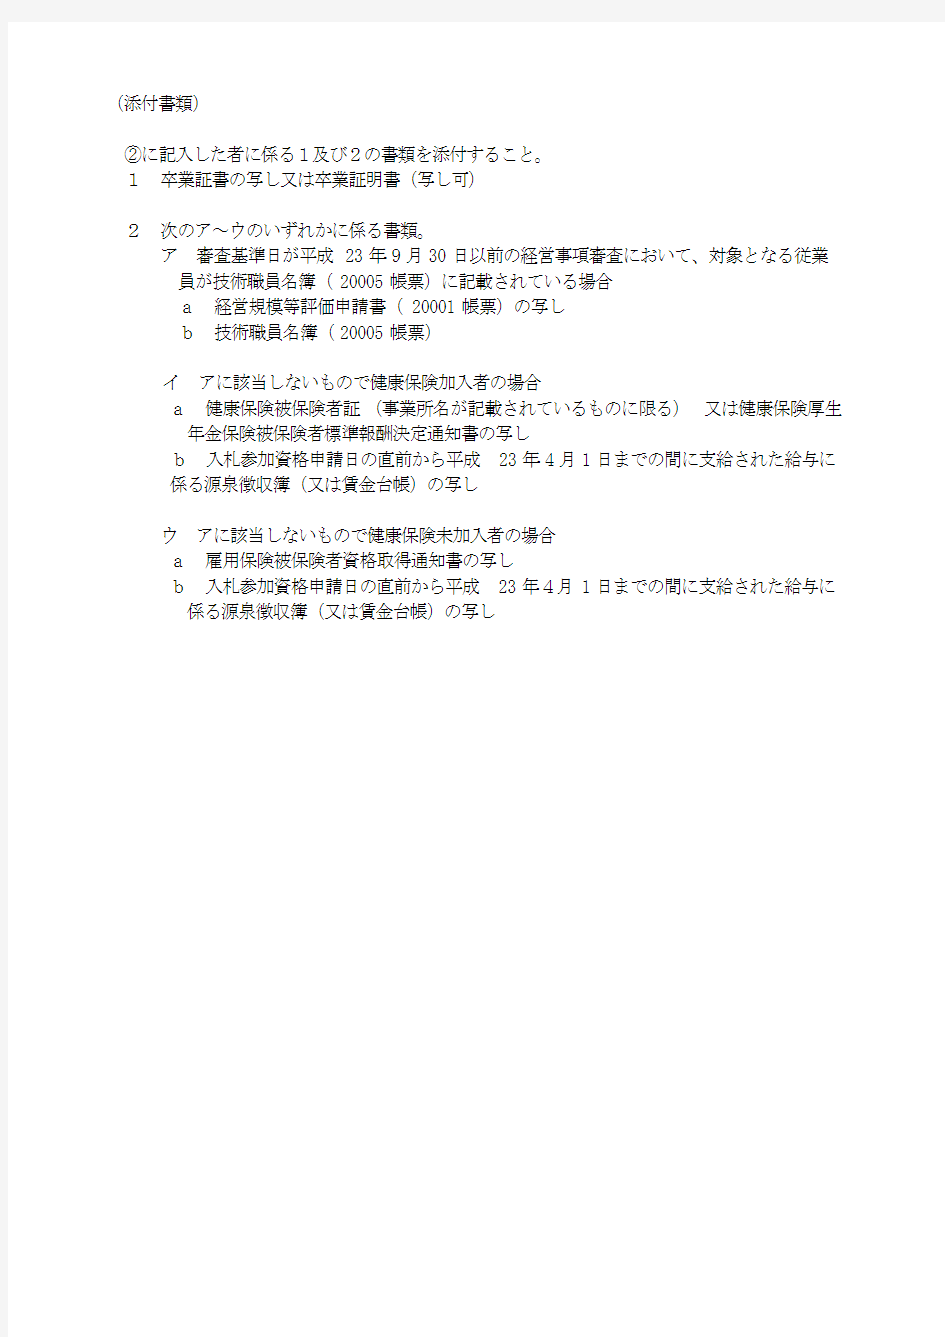 入札契约制度の改善について - 千叶県电子自治体